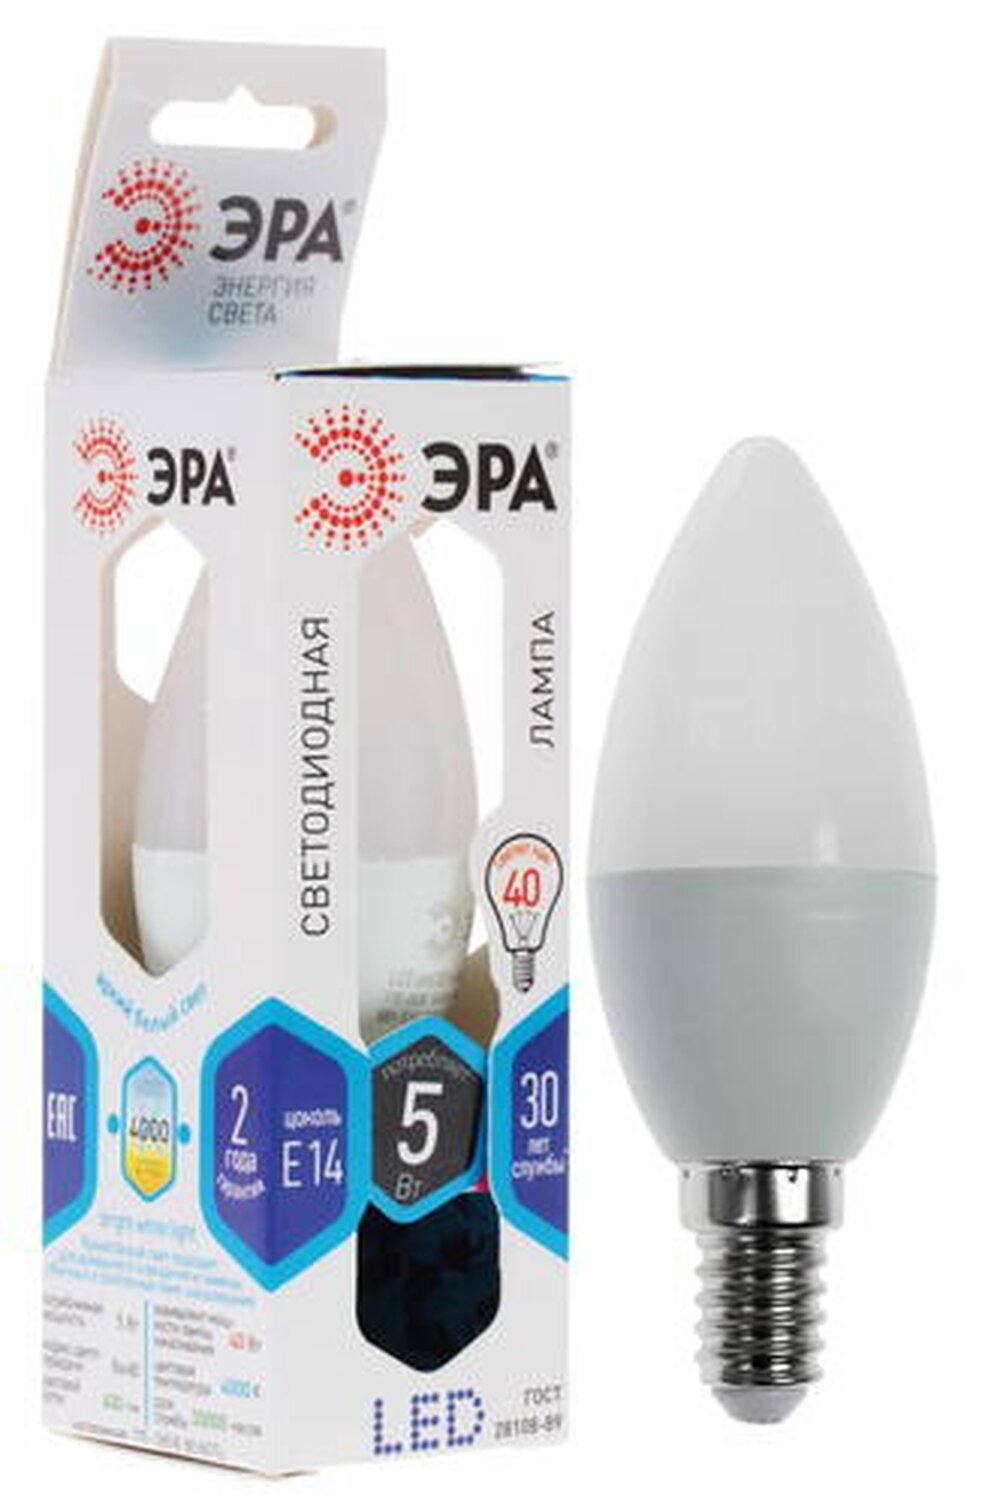 Лампа светодиодная ЭРА LED smd B35-5w-840-E14